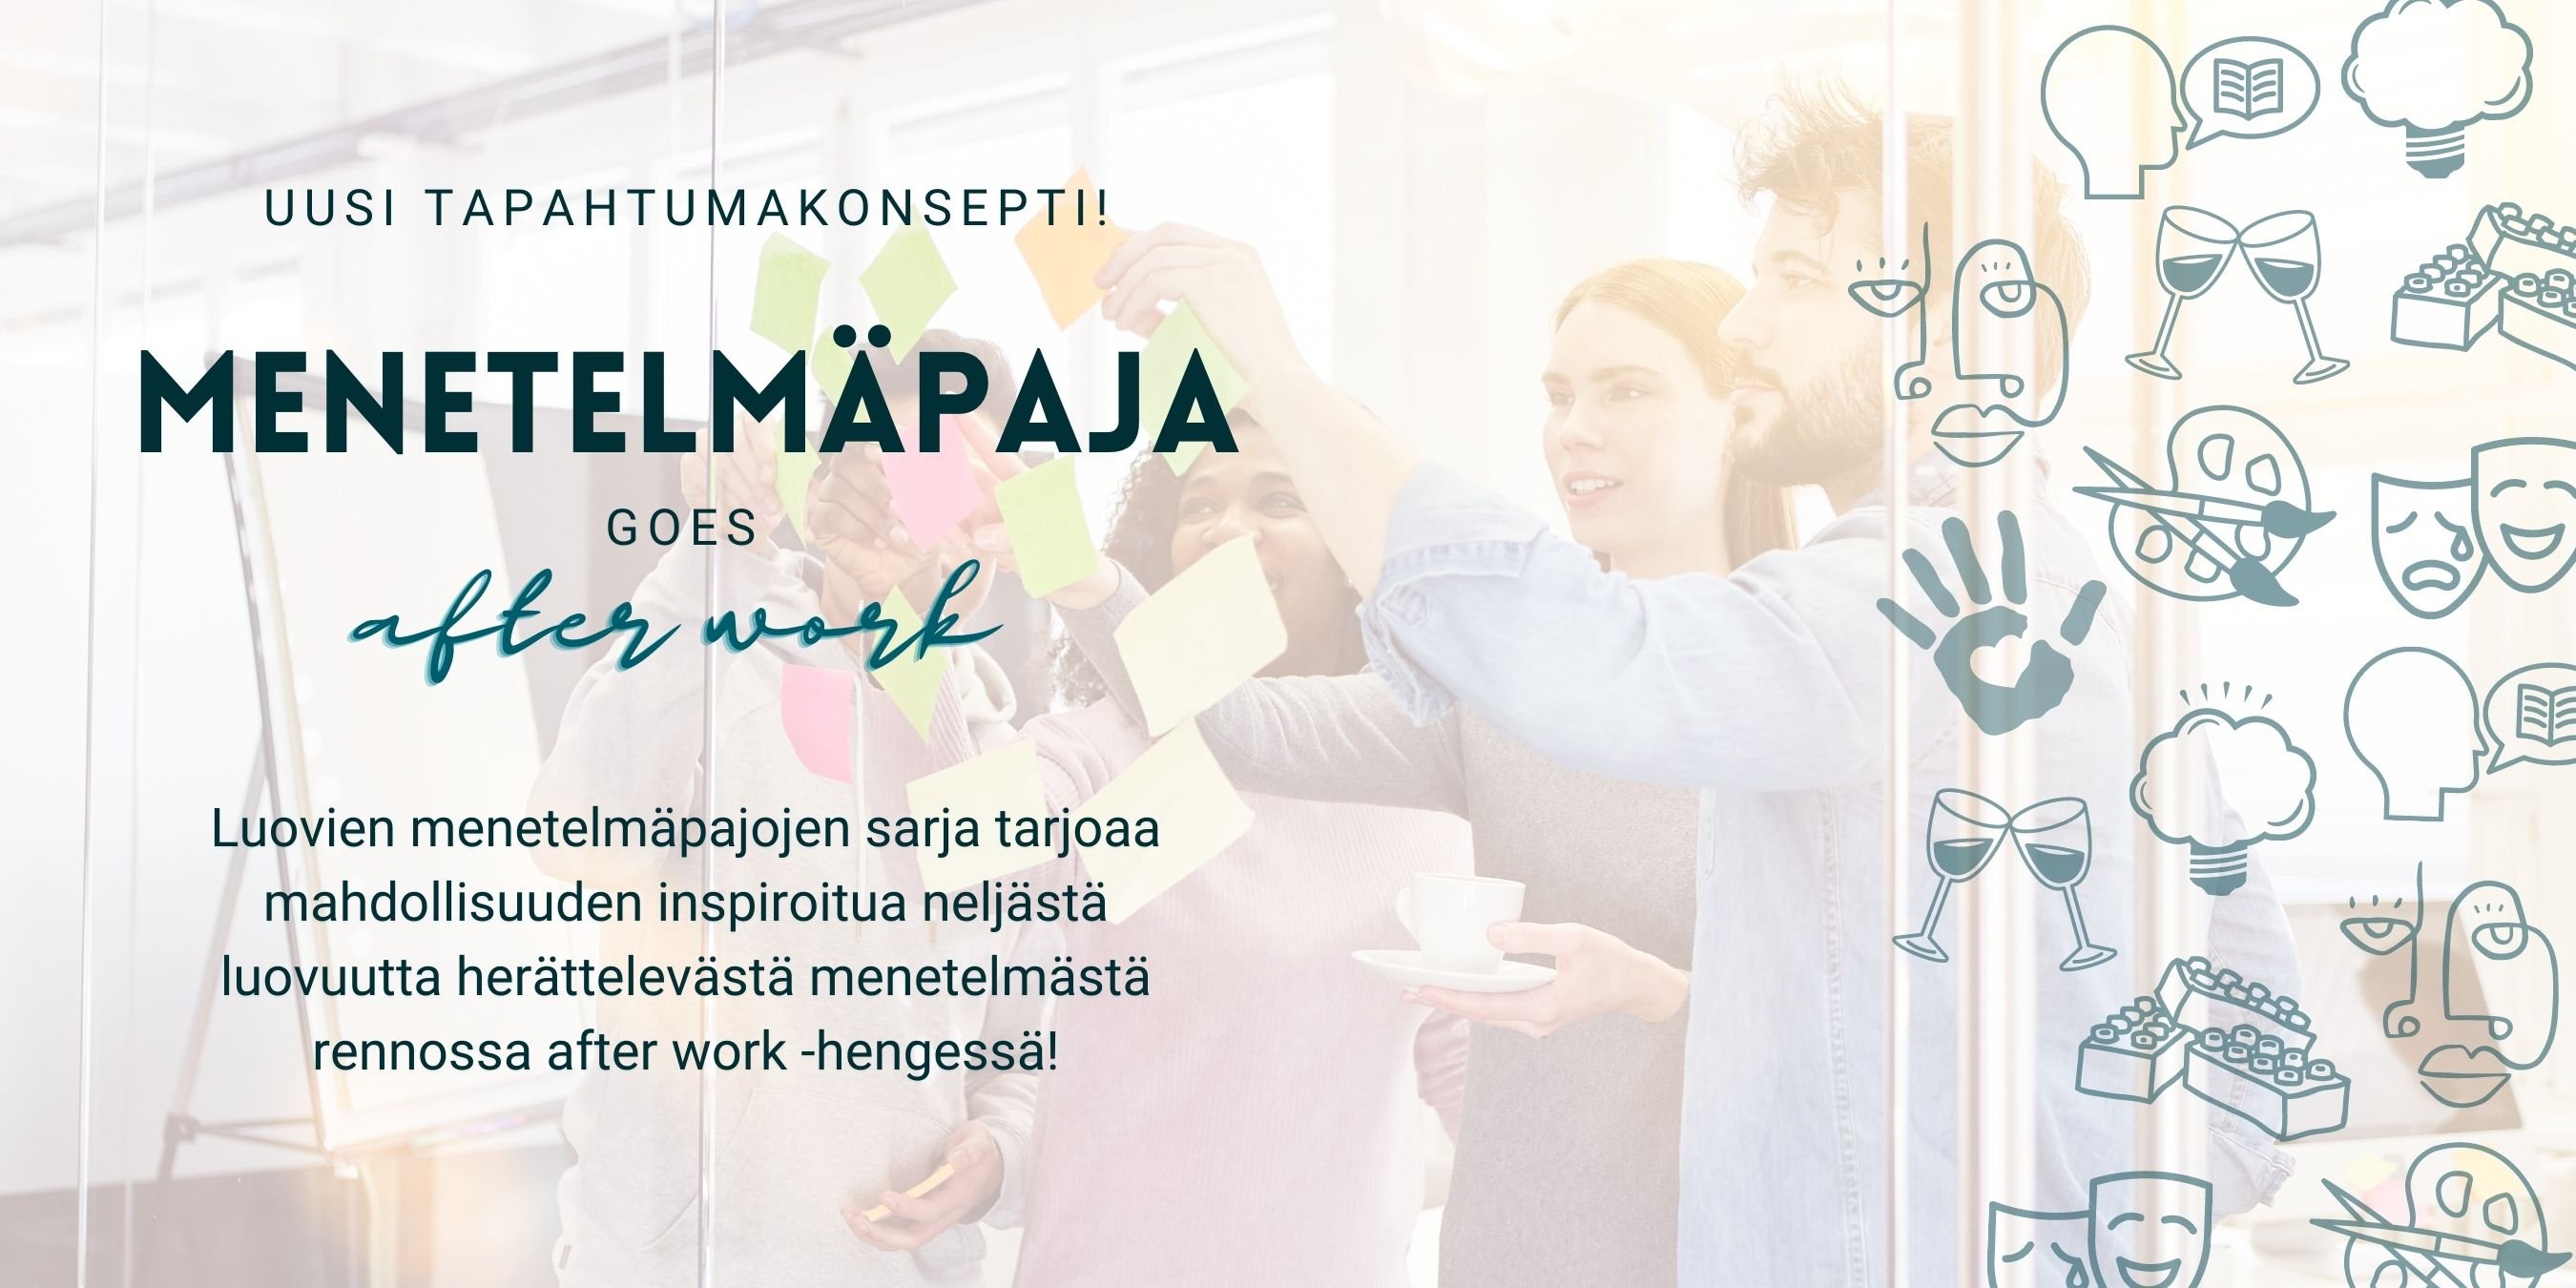 Menetelmäpaja goes after work syksy 2022 nettisivulle.